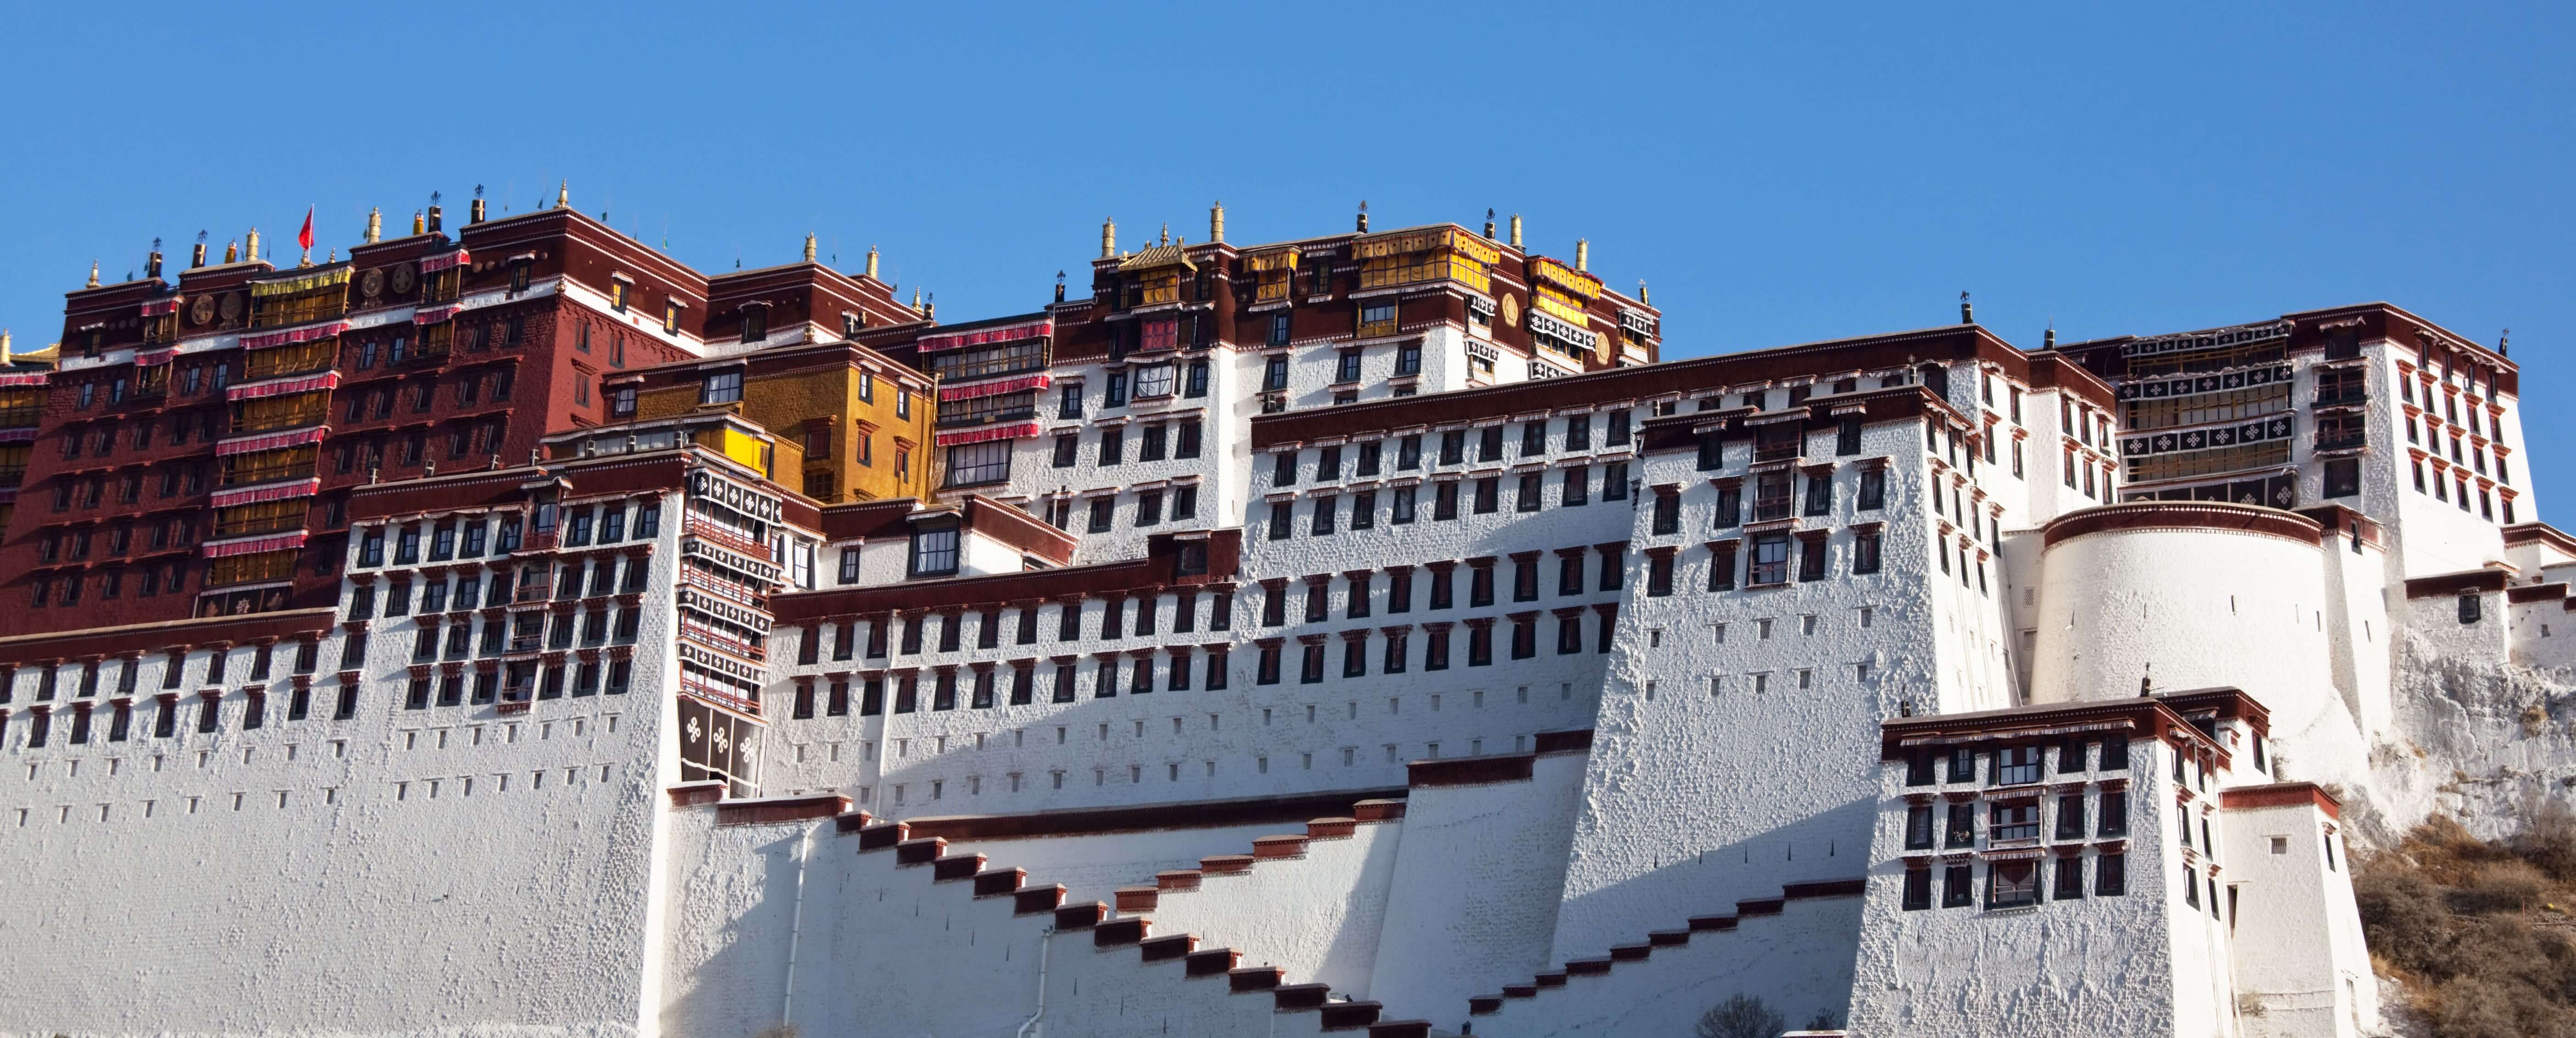 Le Potala à Lhassa, Tibet.